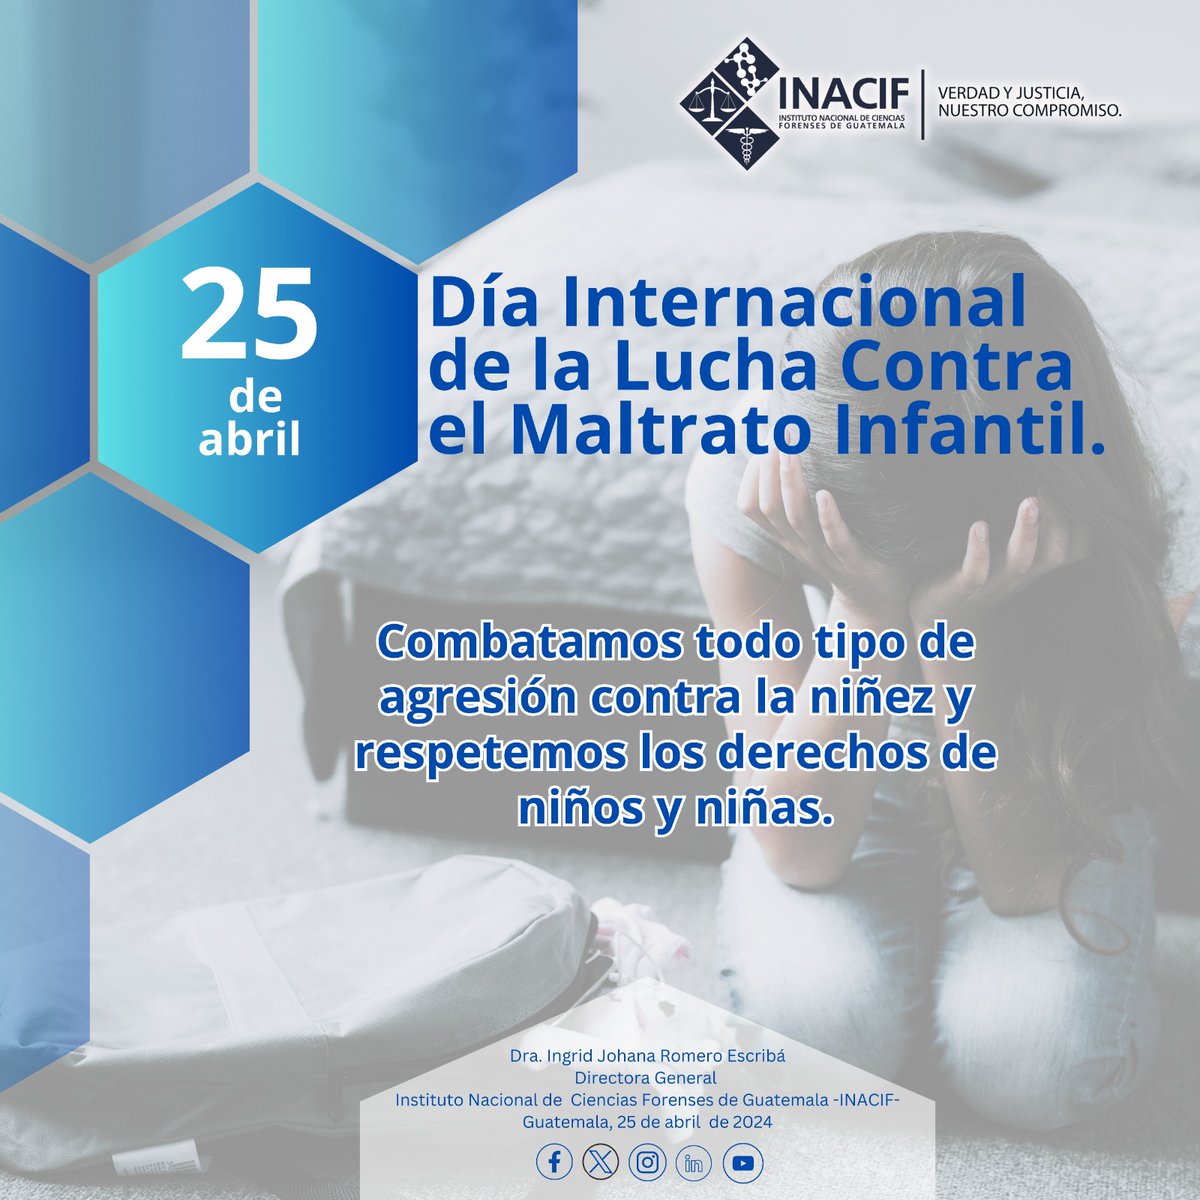 25 de abril
Día Internacional de la Lucha Contra el Maltrato Infantil

#VerdadyJusticia ⚖️